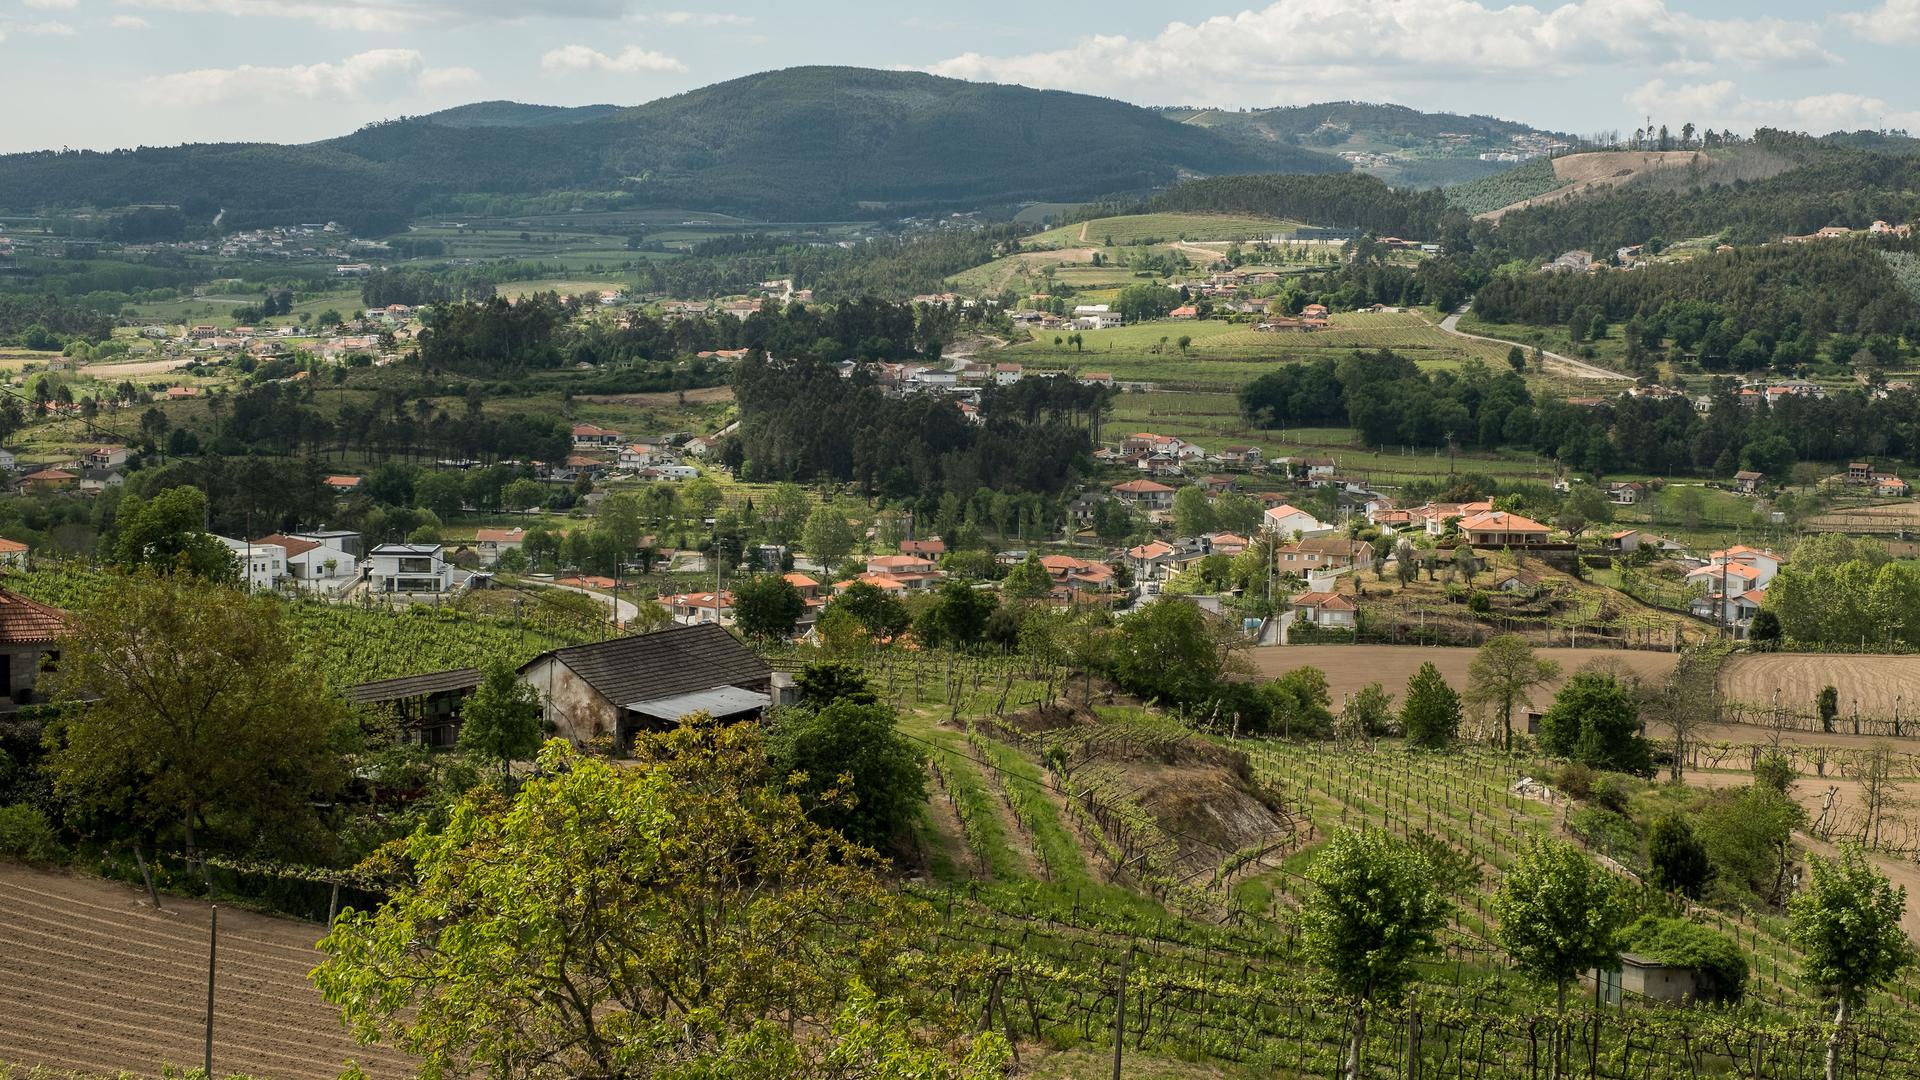 O vale de Lousada é um miradouro para perceber a fragmentação da paisagem rural europeia.